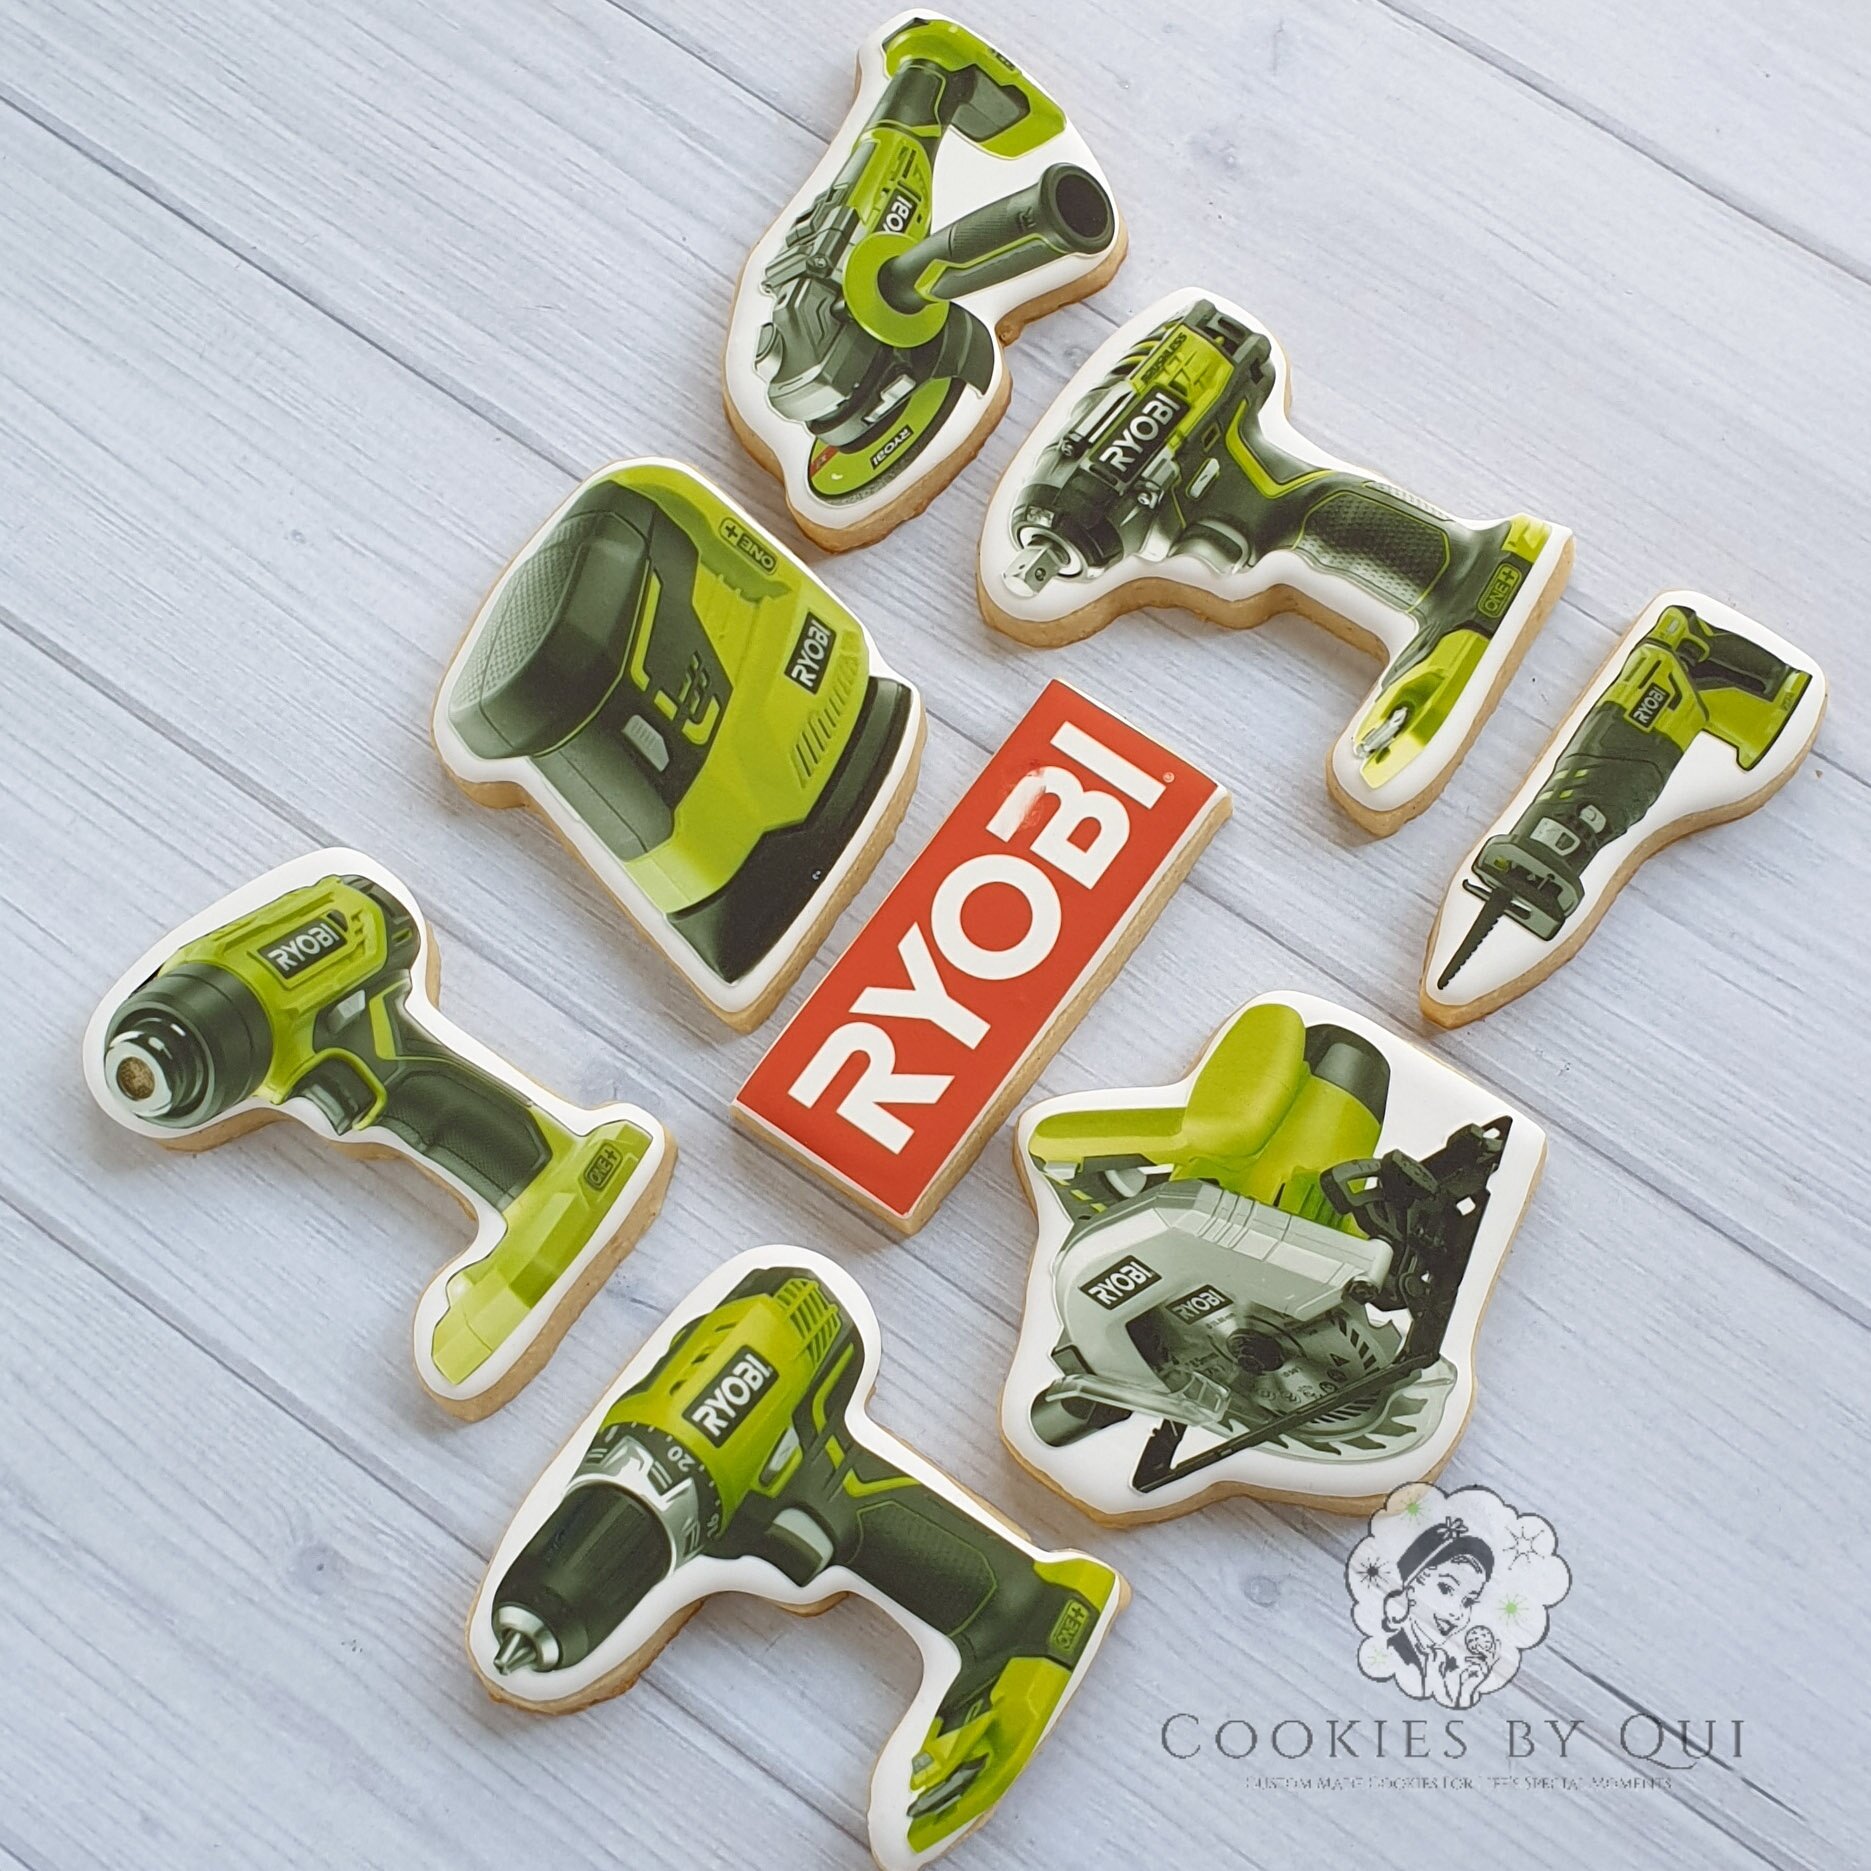 Ryobi Corporate Edible Image Cookies - Cookies by Qui Geelong.jpg